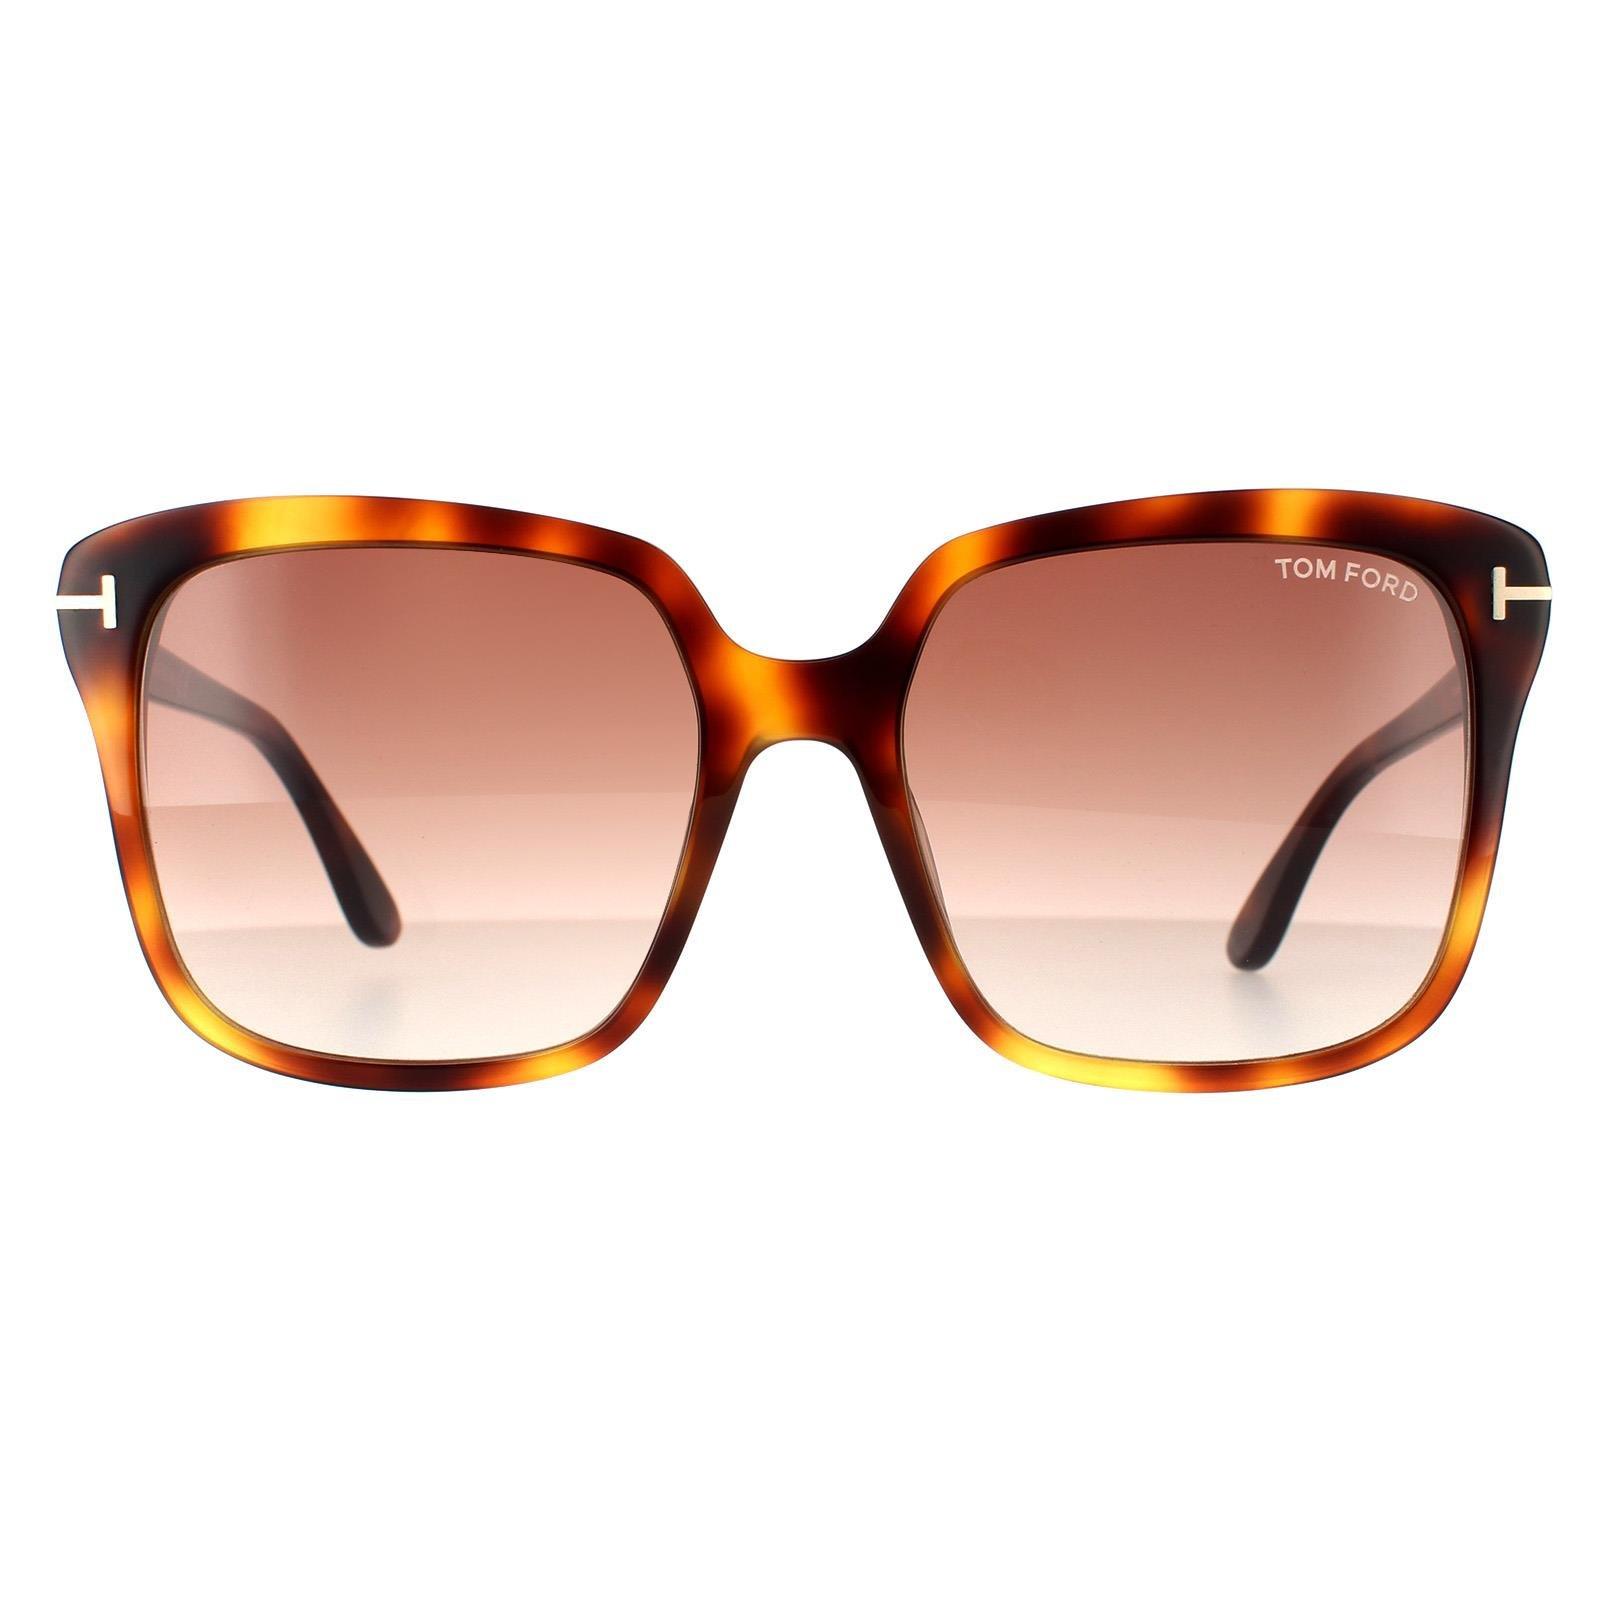 Прямоугольные солнцезащитные очки цвета блонда гавана коричневого цвета с градиентом Tom Ford, коричневый brown amanda legally blonde